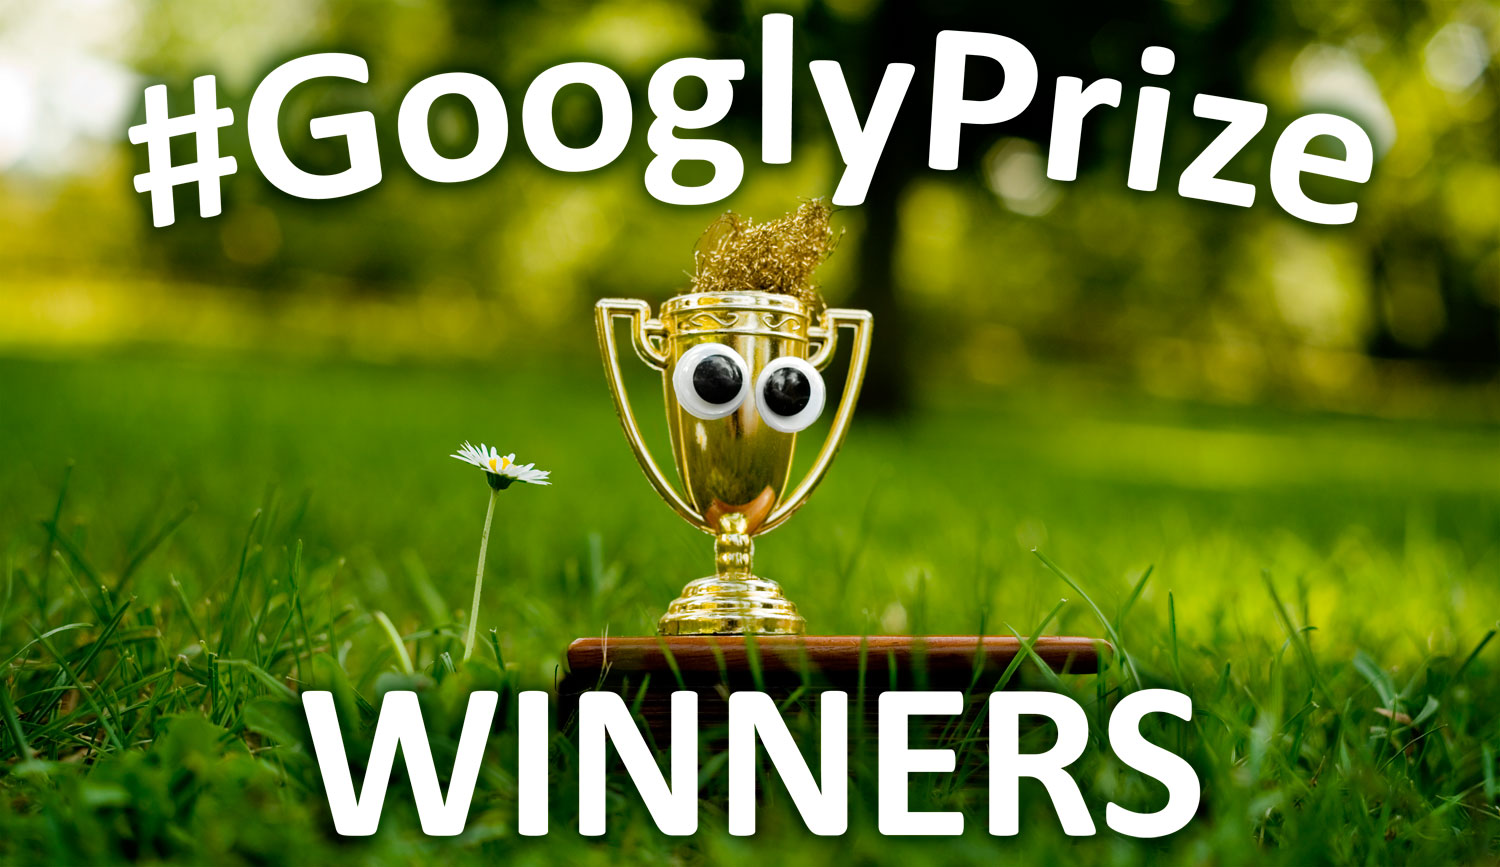 GooglzPriye Winners 09